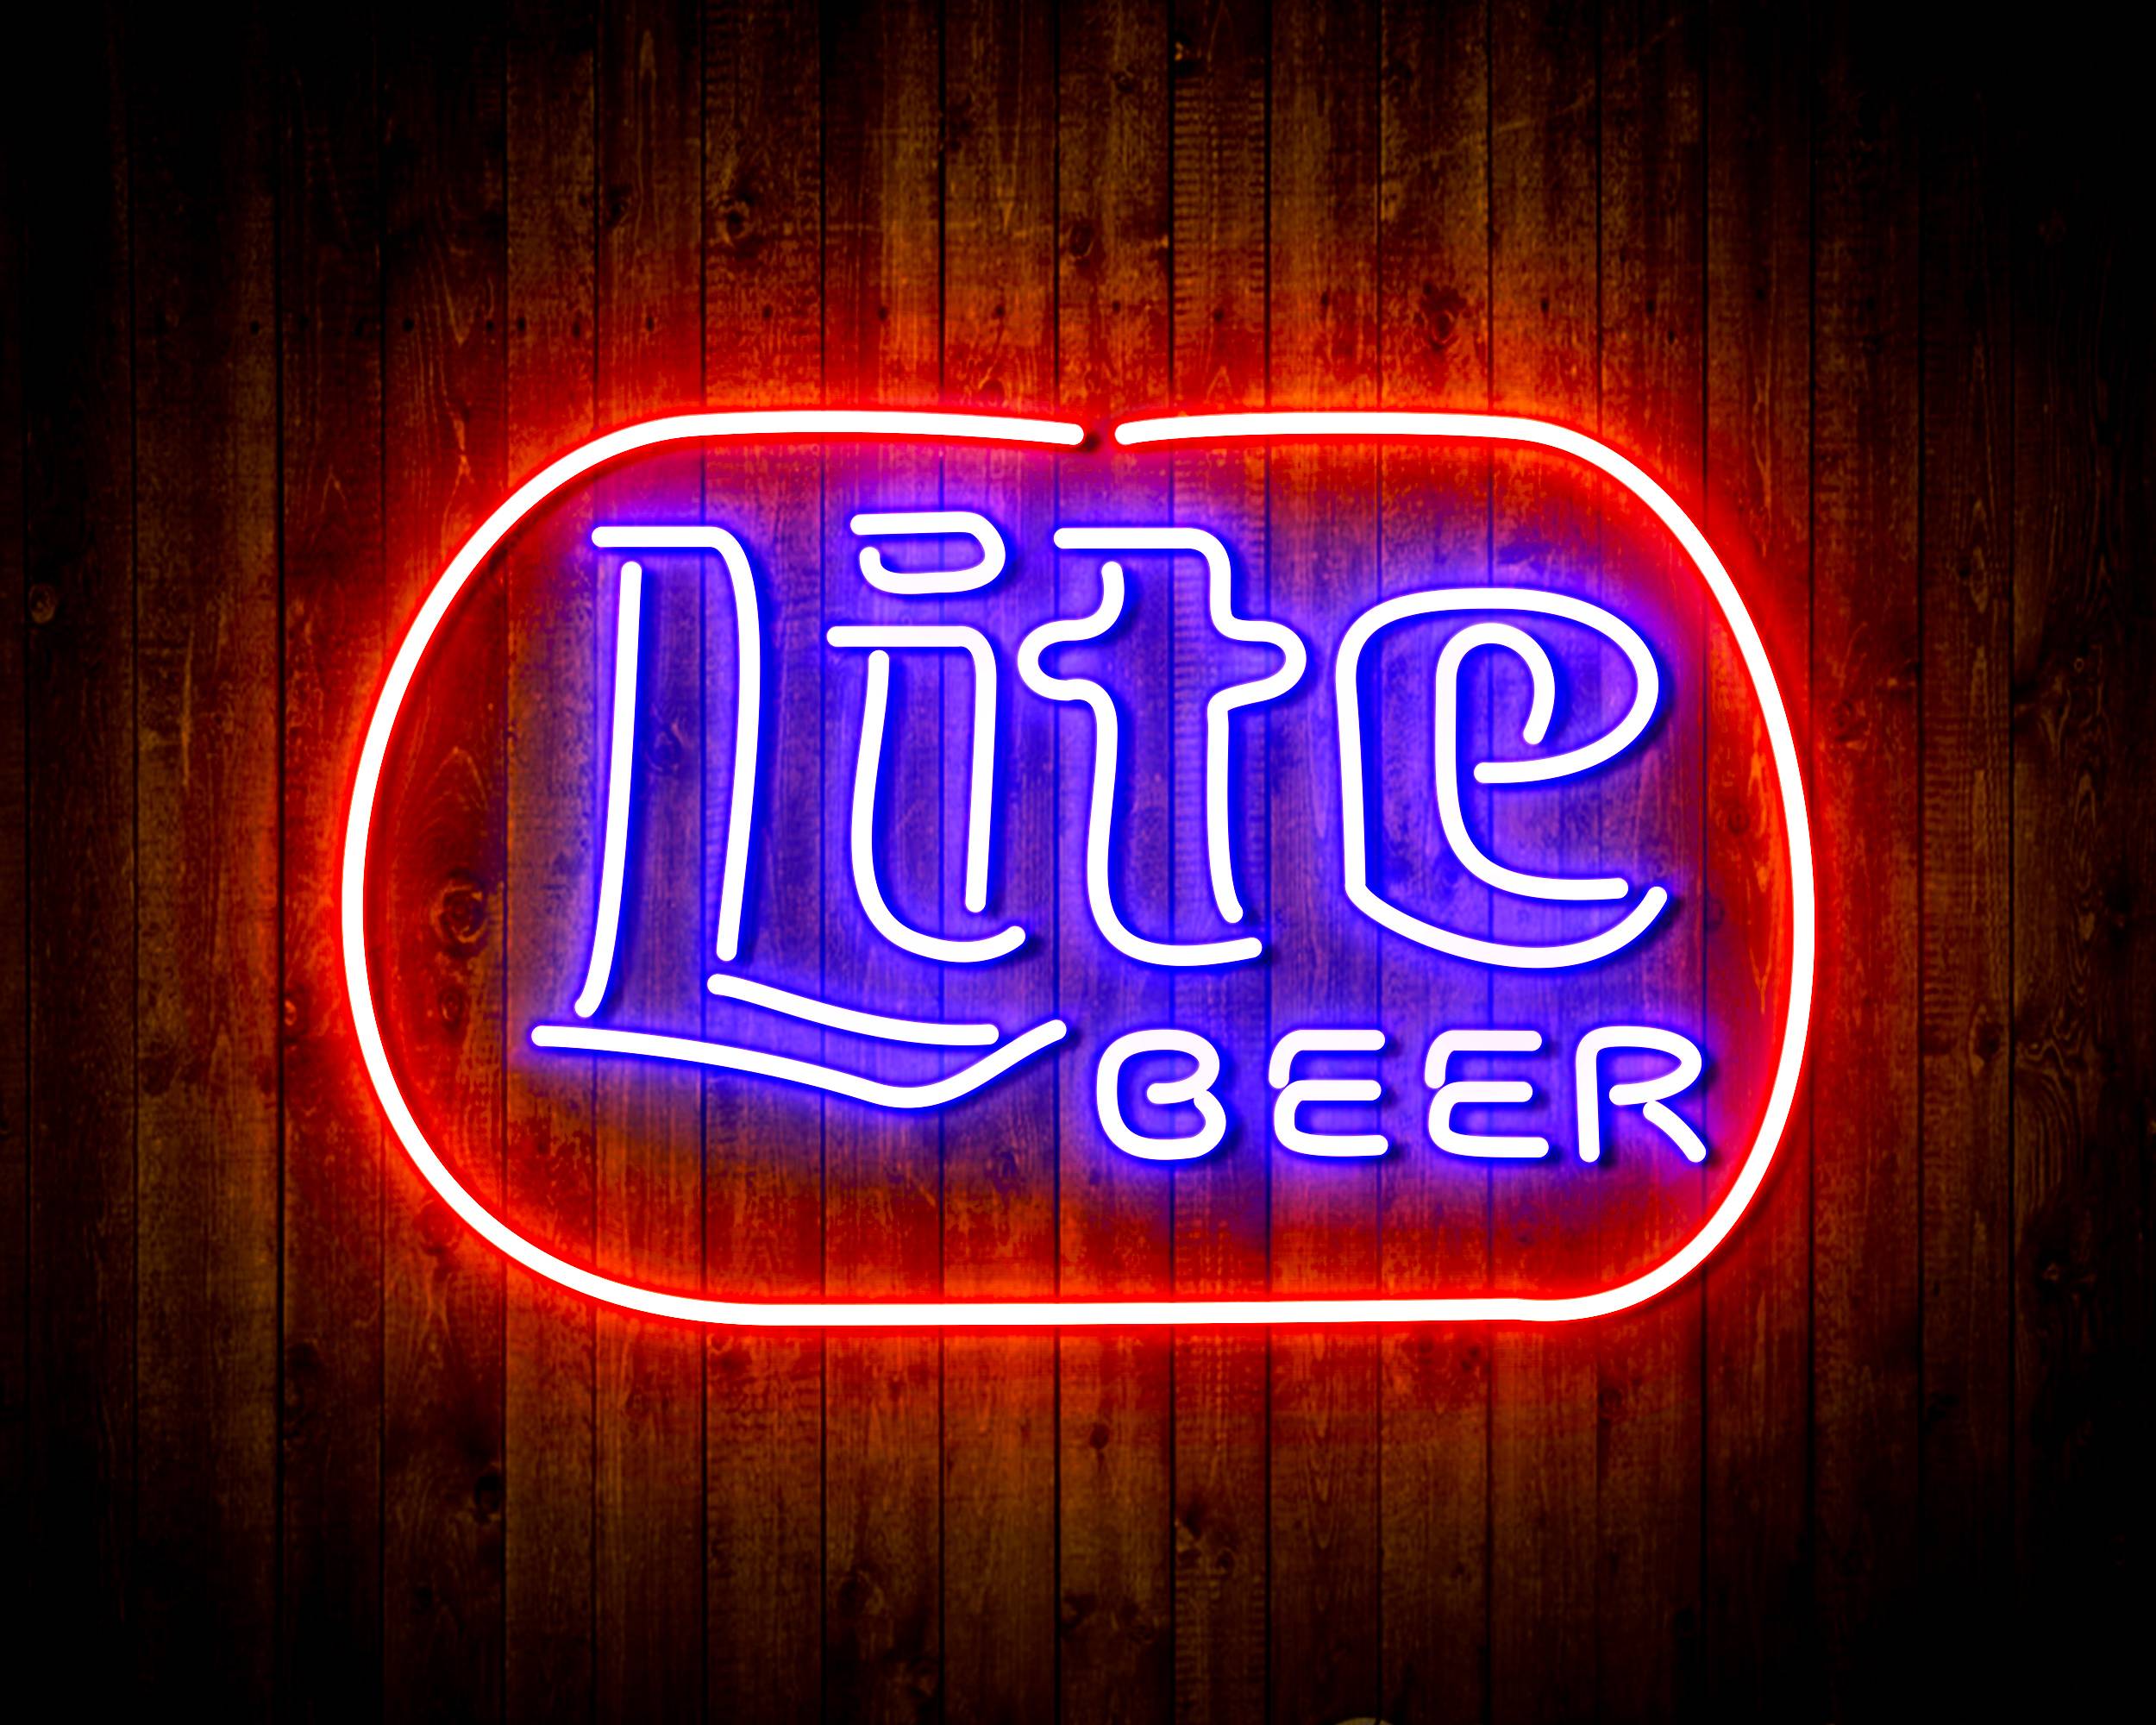 Miller Lite Beer Handmade LED Neon Light Sign